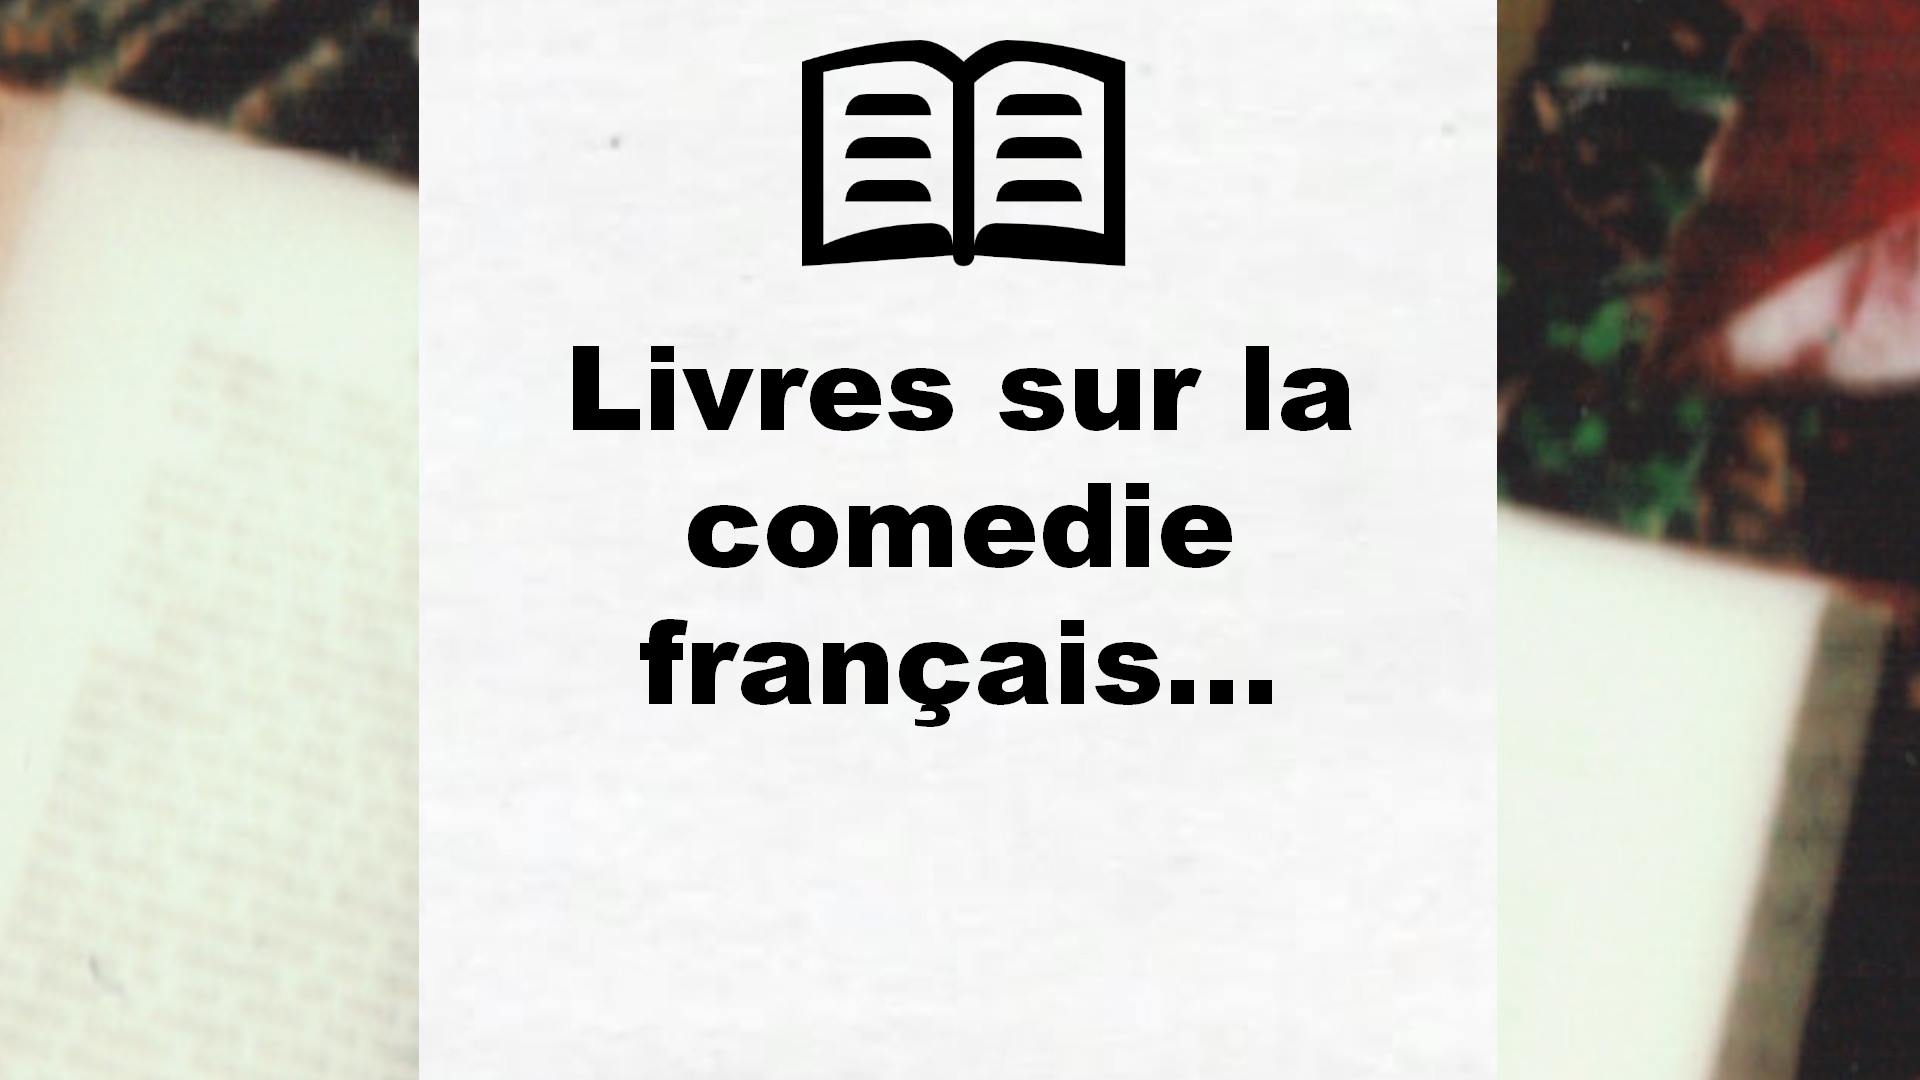 Livres sur la comedie française